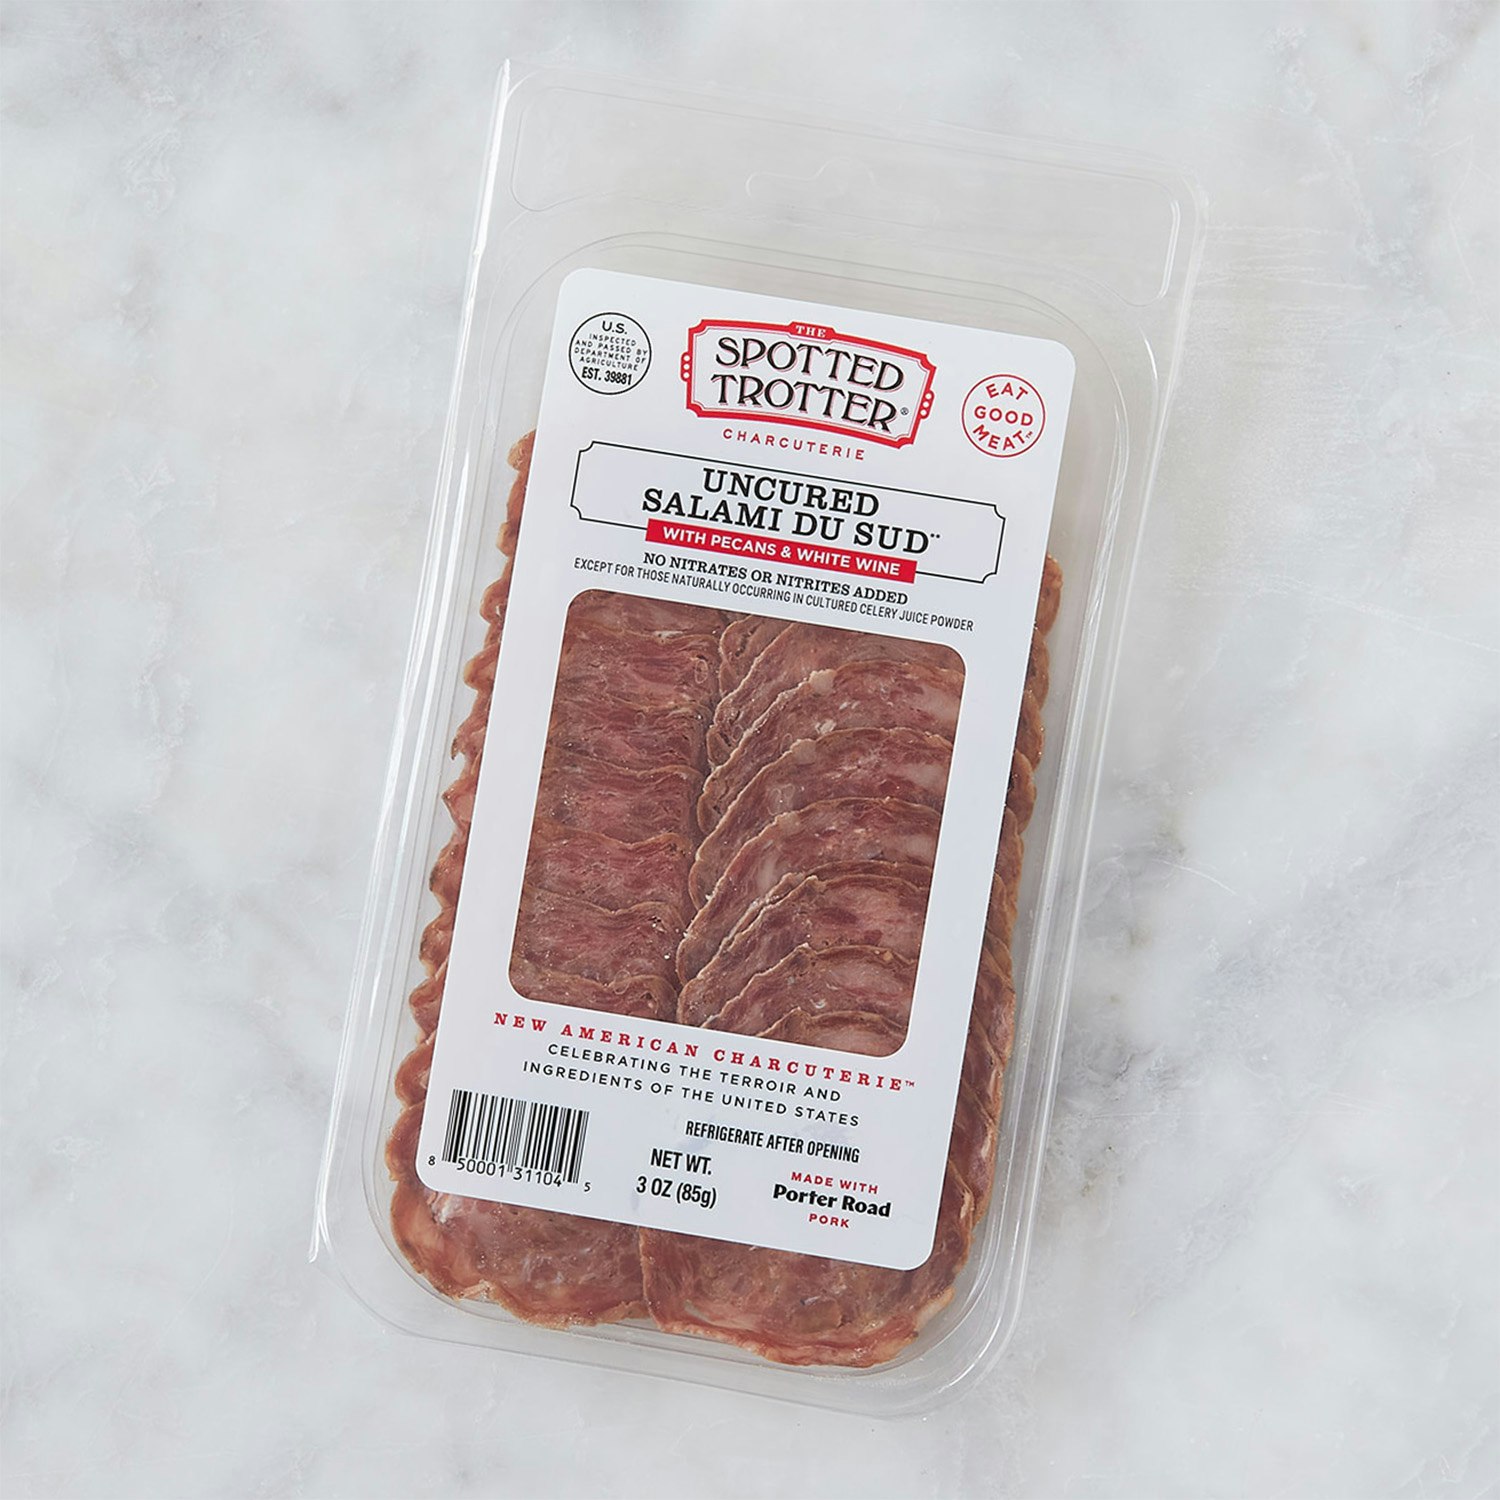 Spotted Trotter Sliced Salami du Sud meats